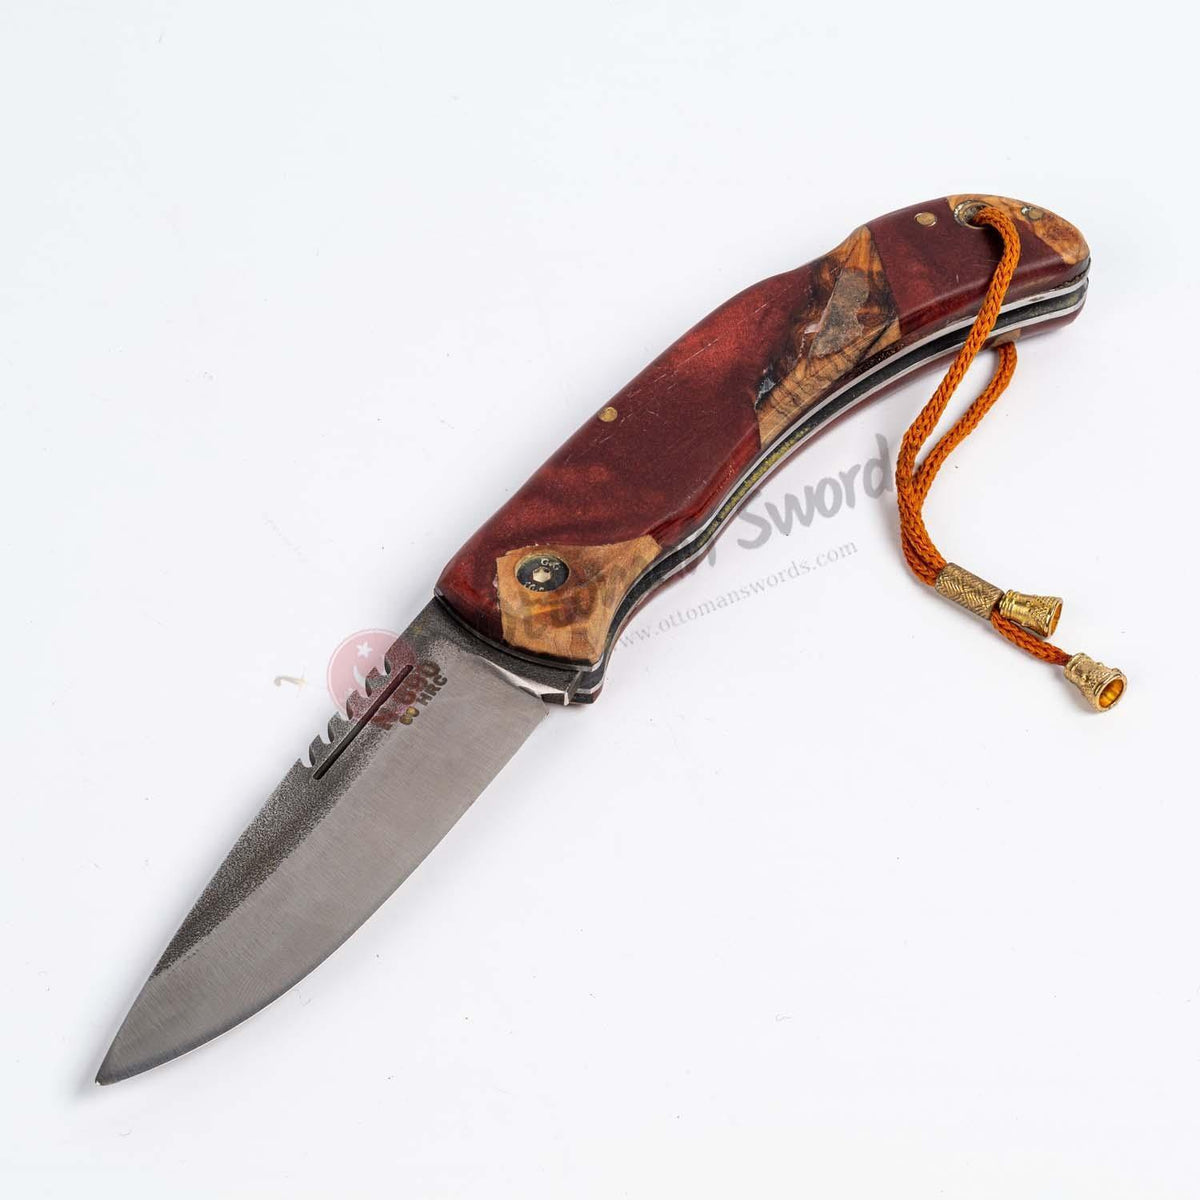 Epoxy Burgundy Handle Folding Knife and Leather Sheath (2)